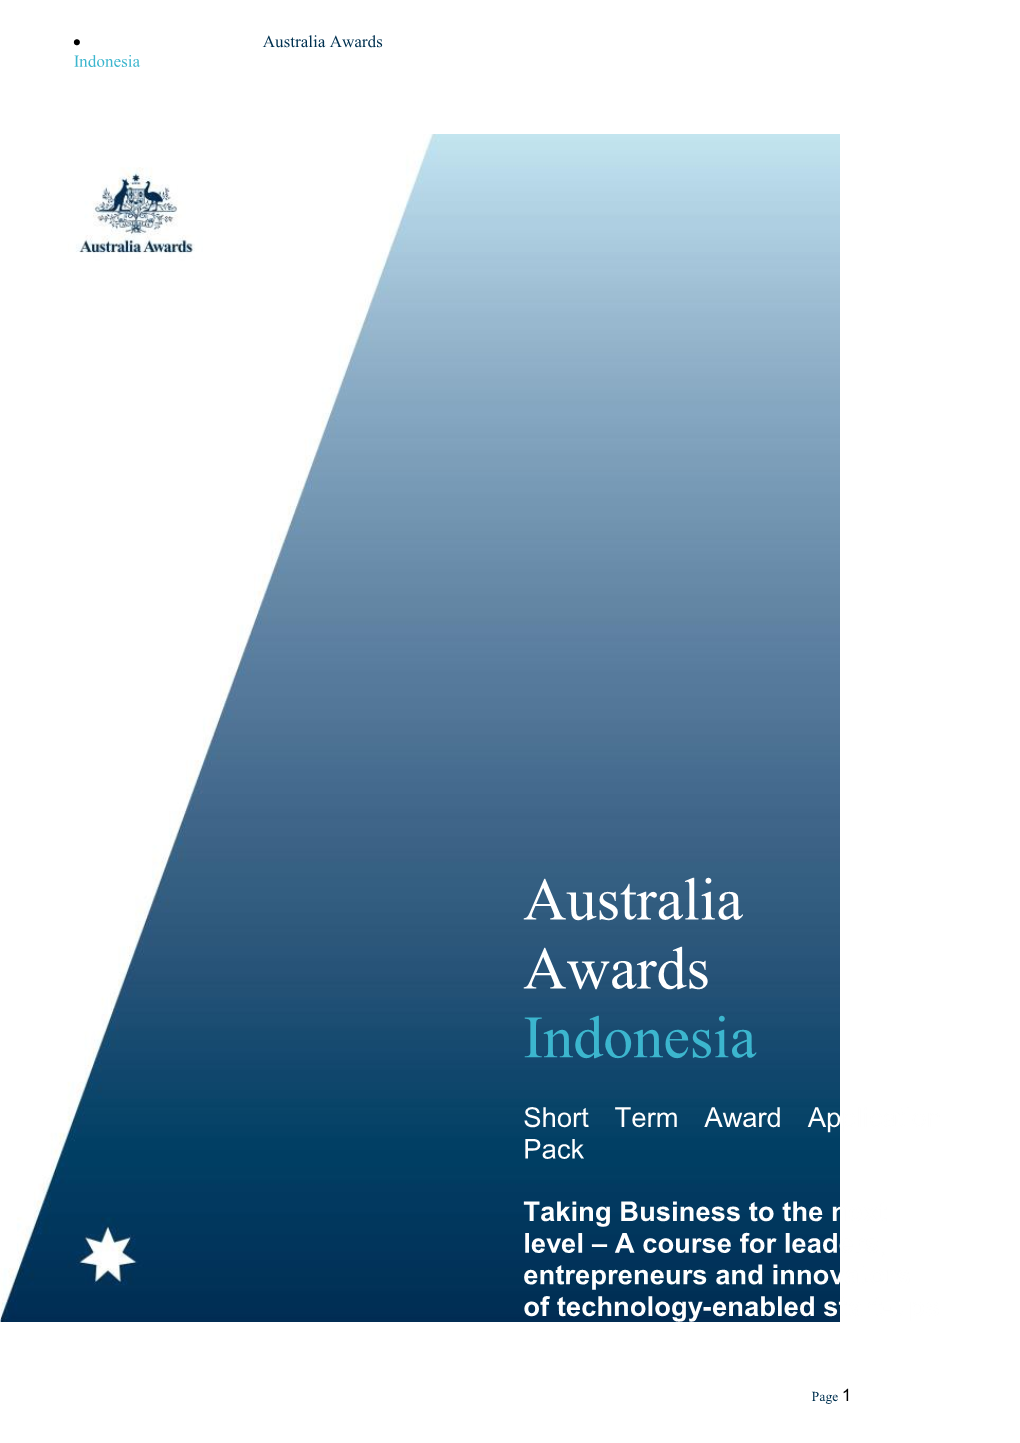 Goals and Purpose of Australia Awards Indonesia